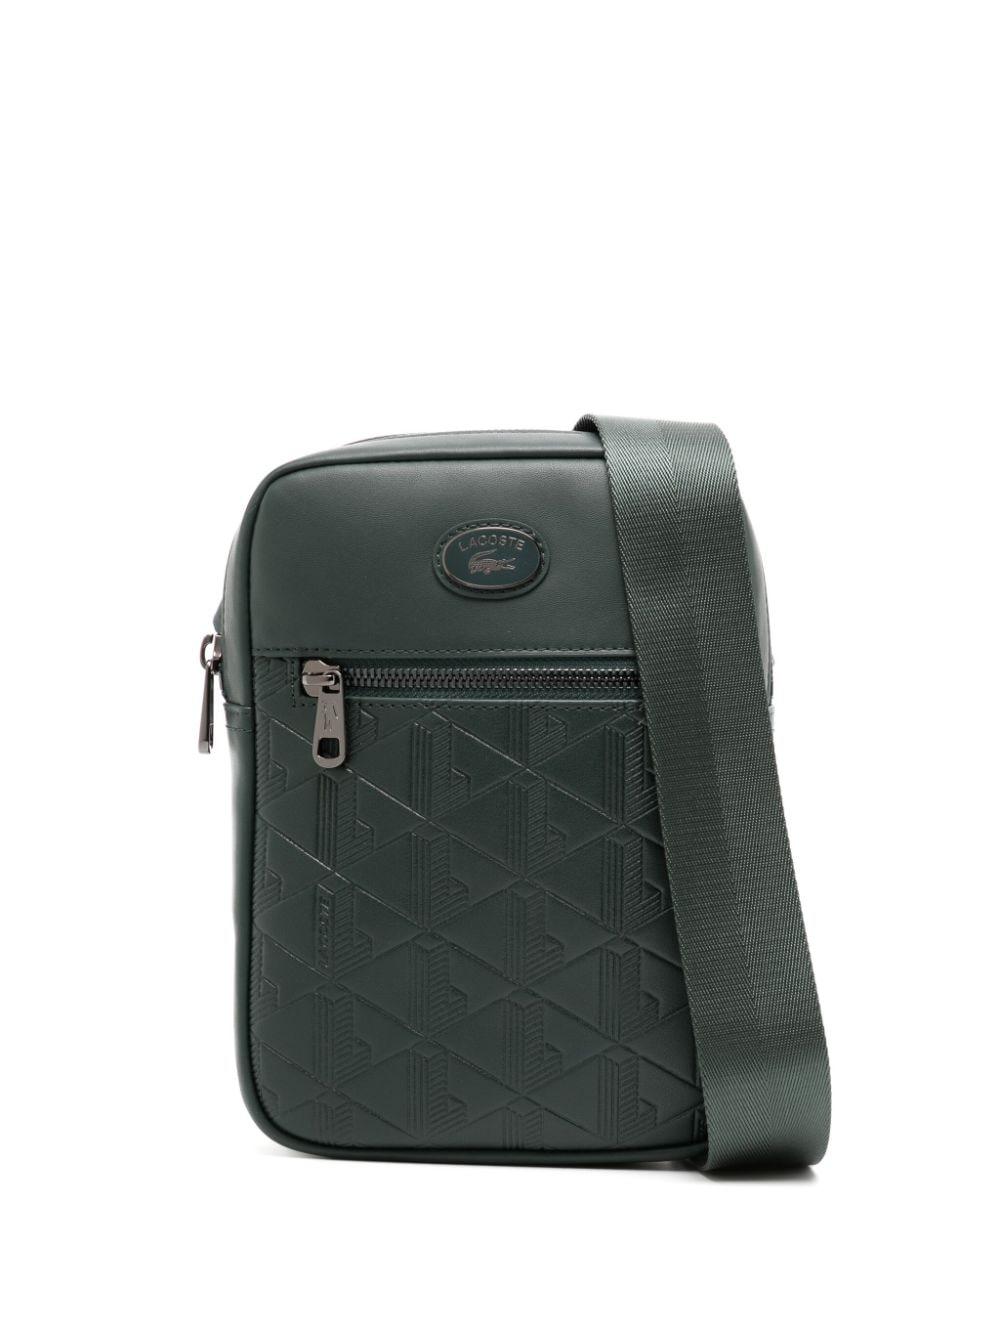 Lacoste Signature Green Leather Shoulder Bag in Black for Men